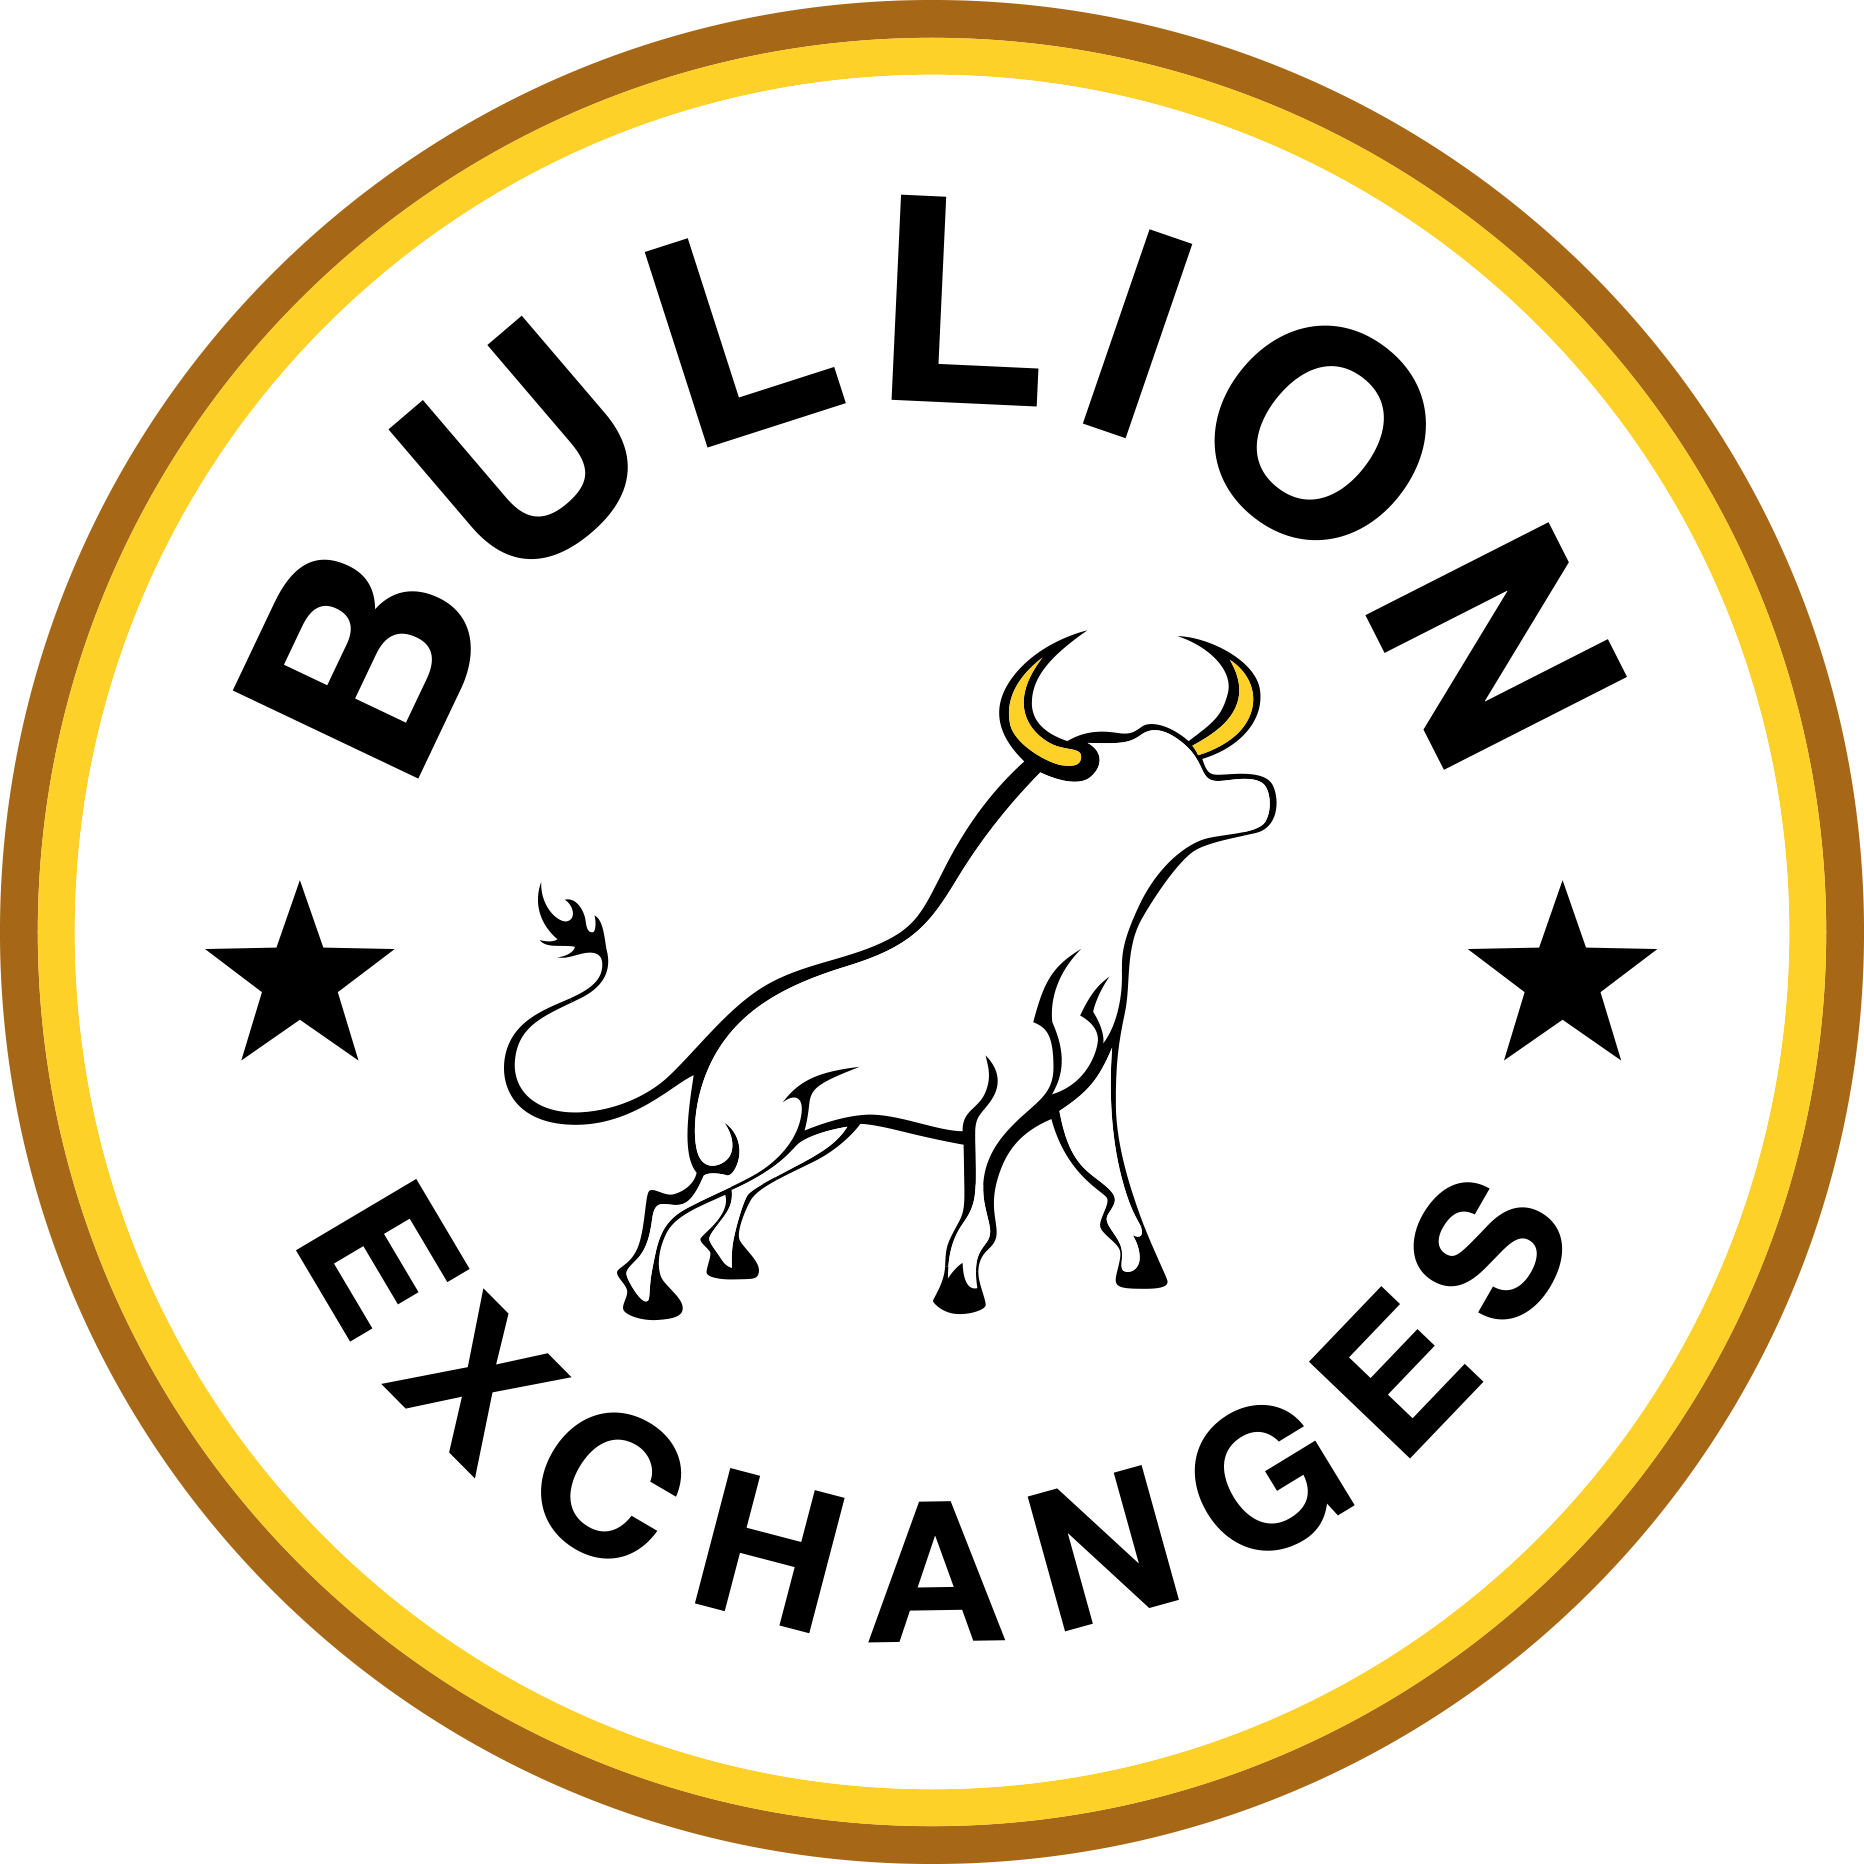 Bullion Exchanges